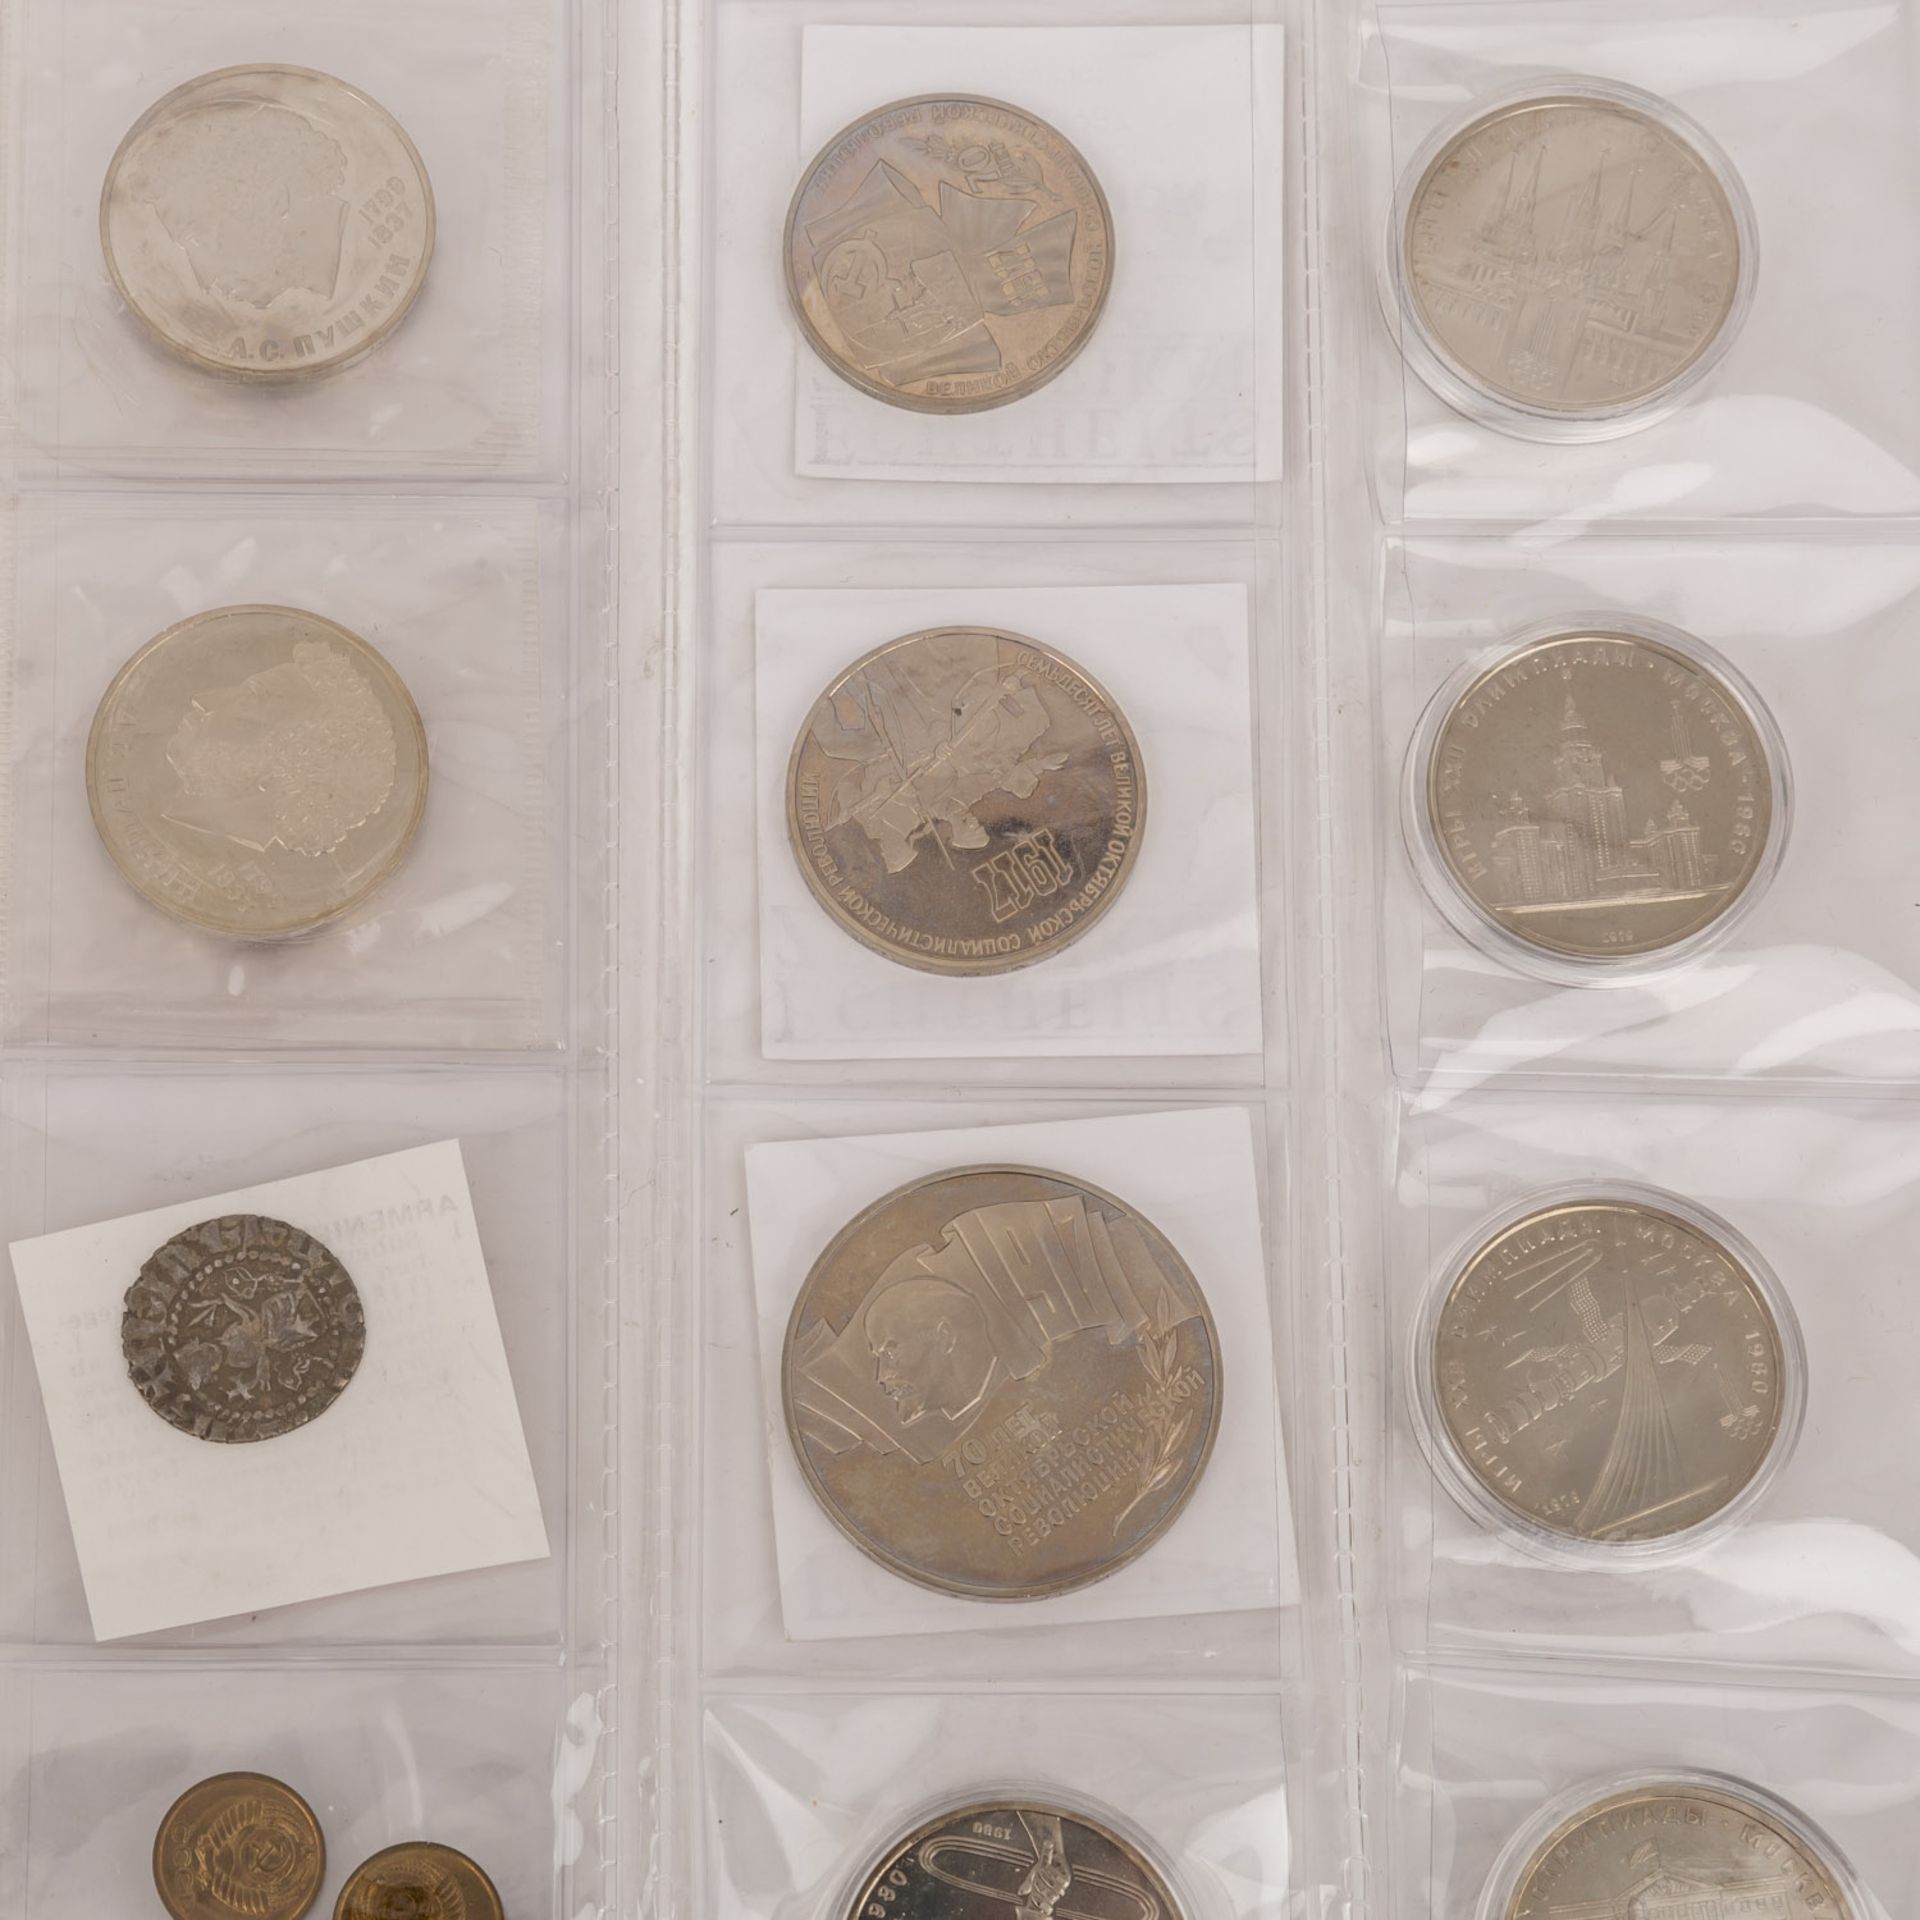 Russland / UDSSR - Sammlung von 28 Münzen,meist Kupfer/Nickel.Russia / USSR - - Image 3 of 3